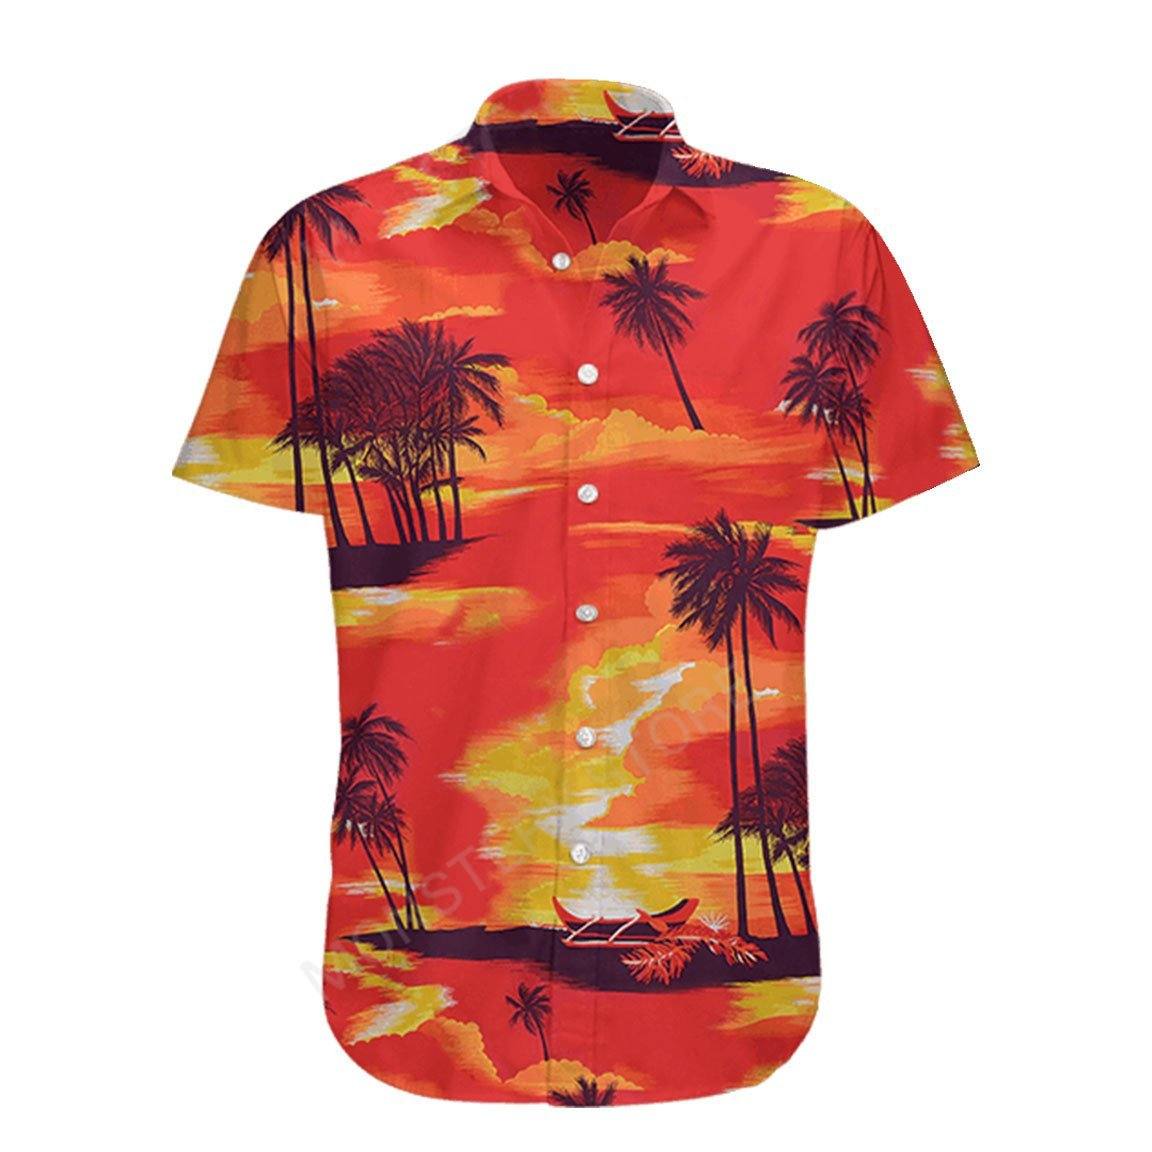 Gearhumans 3D Max Candy Hawaii Shirt ZB25038 Hawai Shirt Short Sleeve Shirt S 